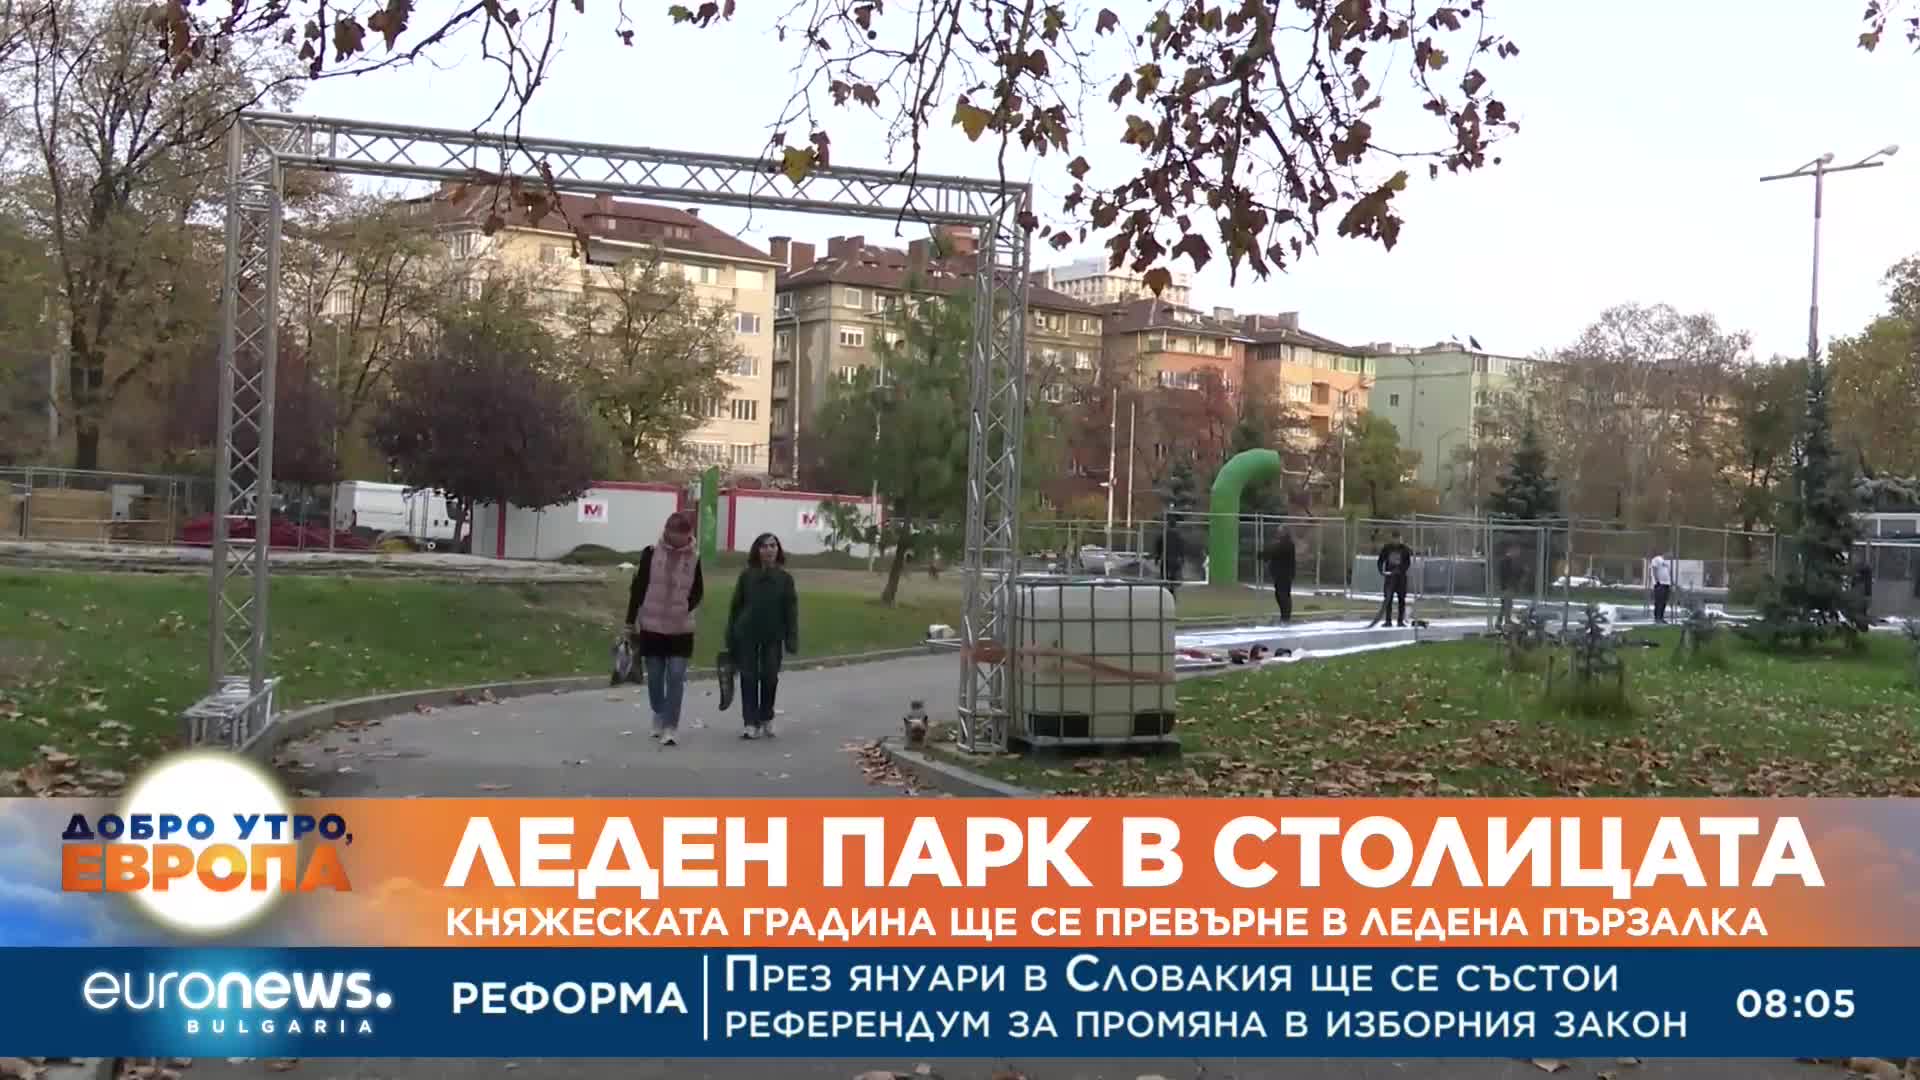 Княжеската градина в София ще се превърне в ледена пързалка